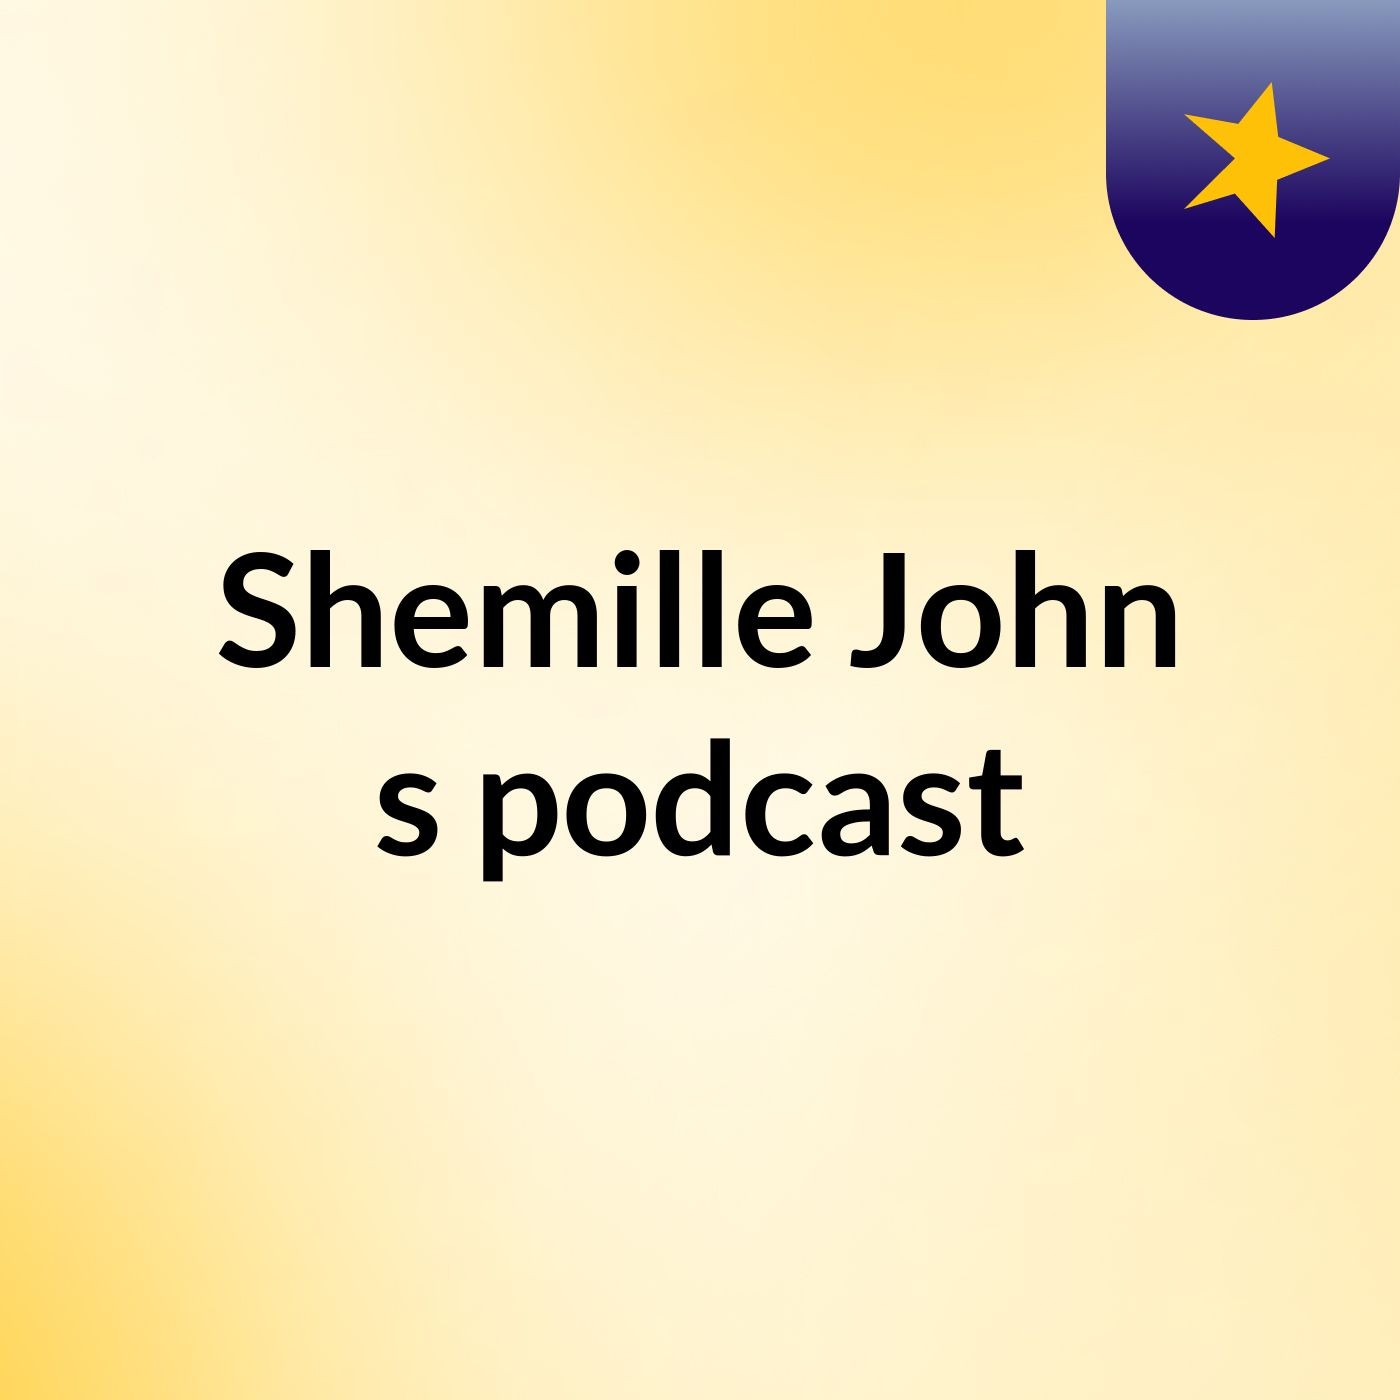 Shemille John's podcast